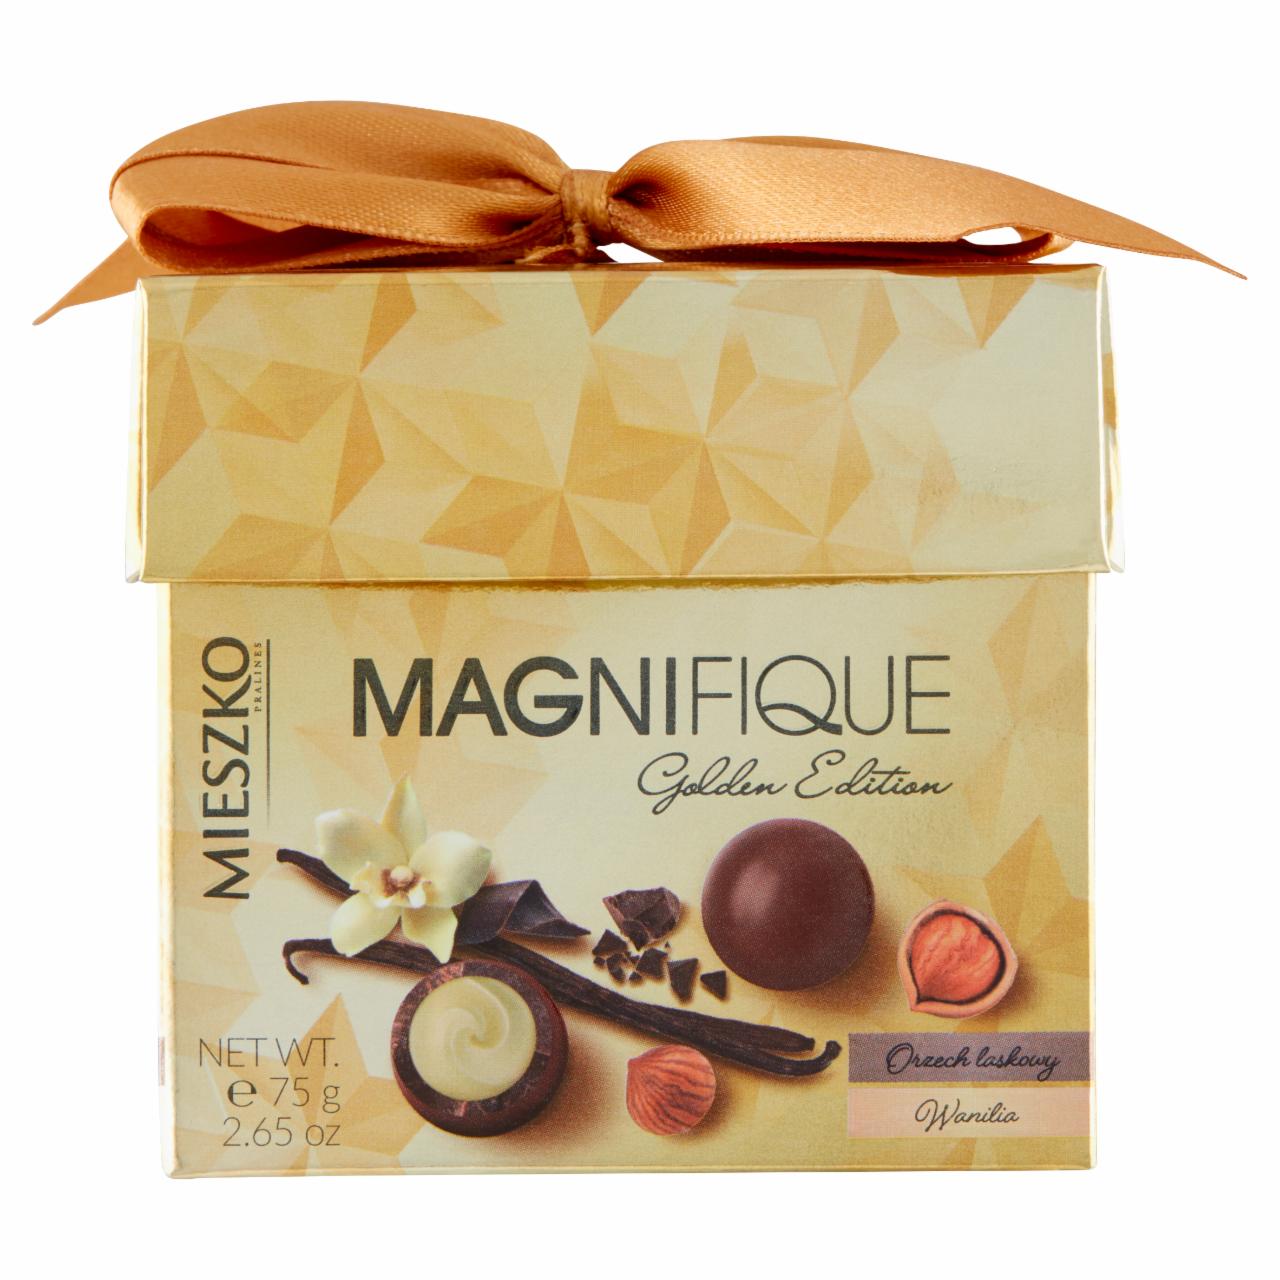 Zdjęcia - Mieszko Magnifique Praliny w mlecznej czekoladzie orzech laskowy wanilia 75 g